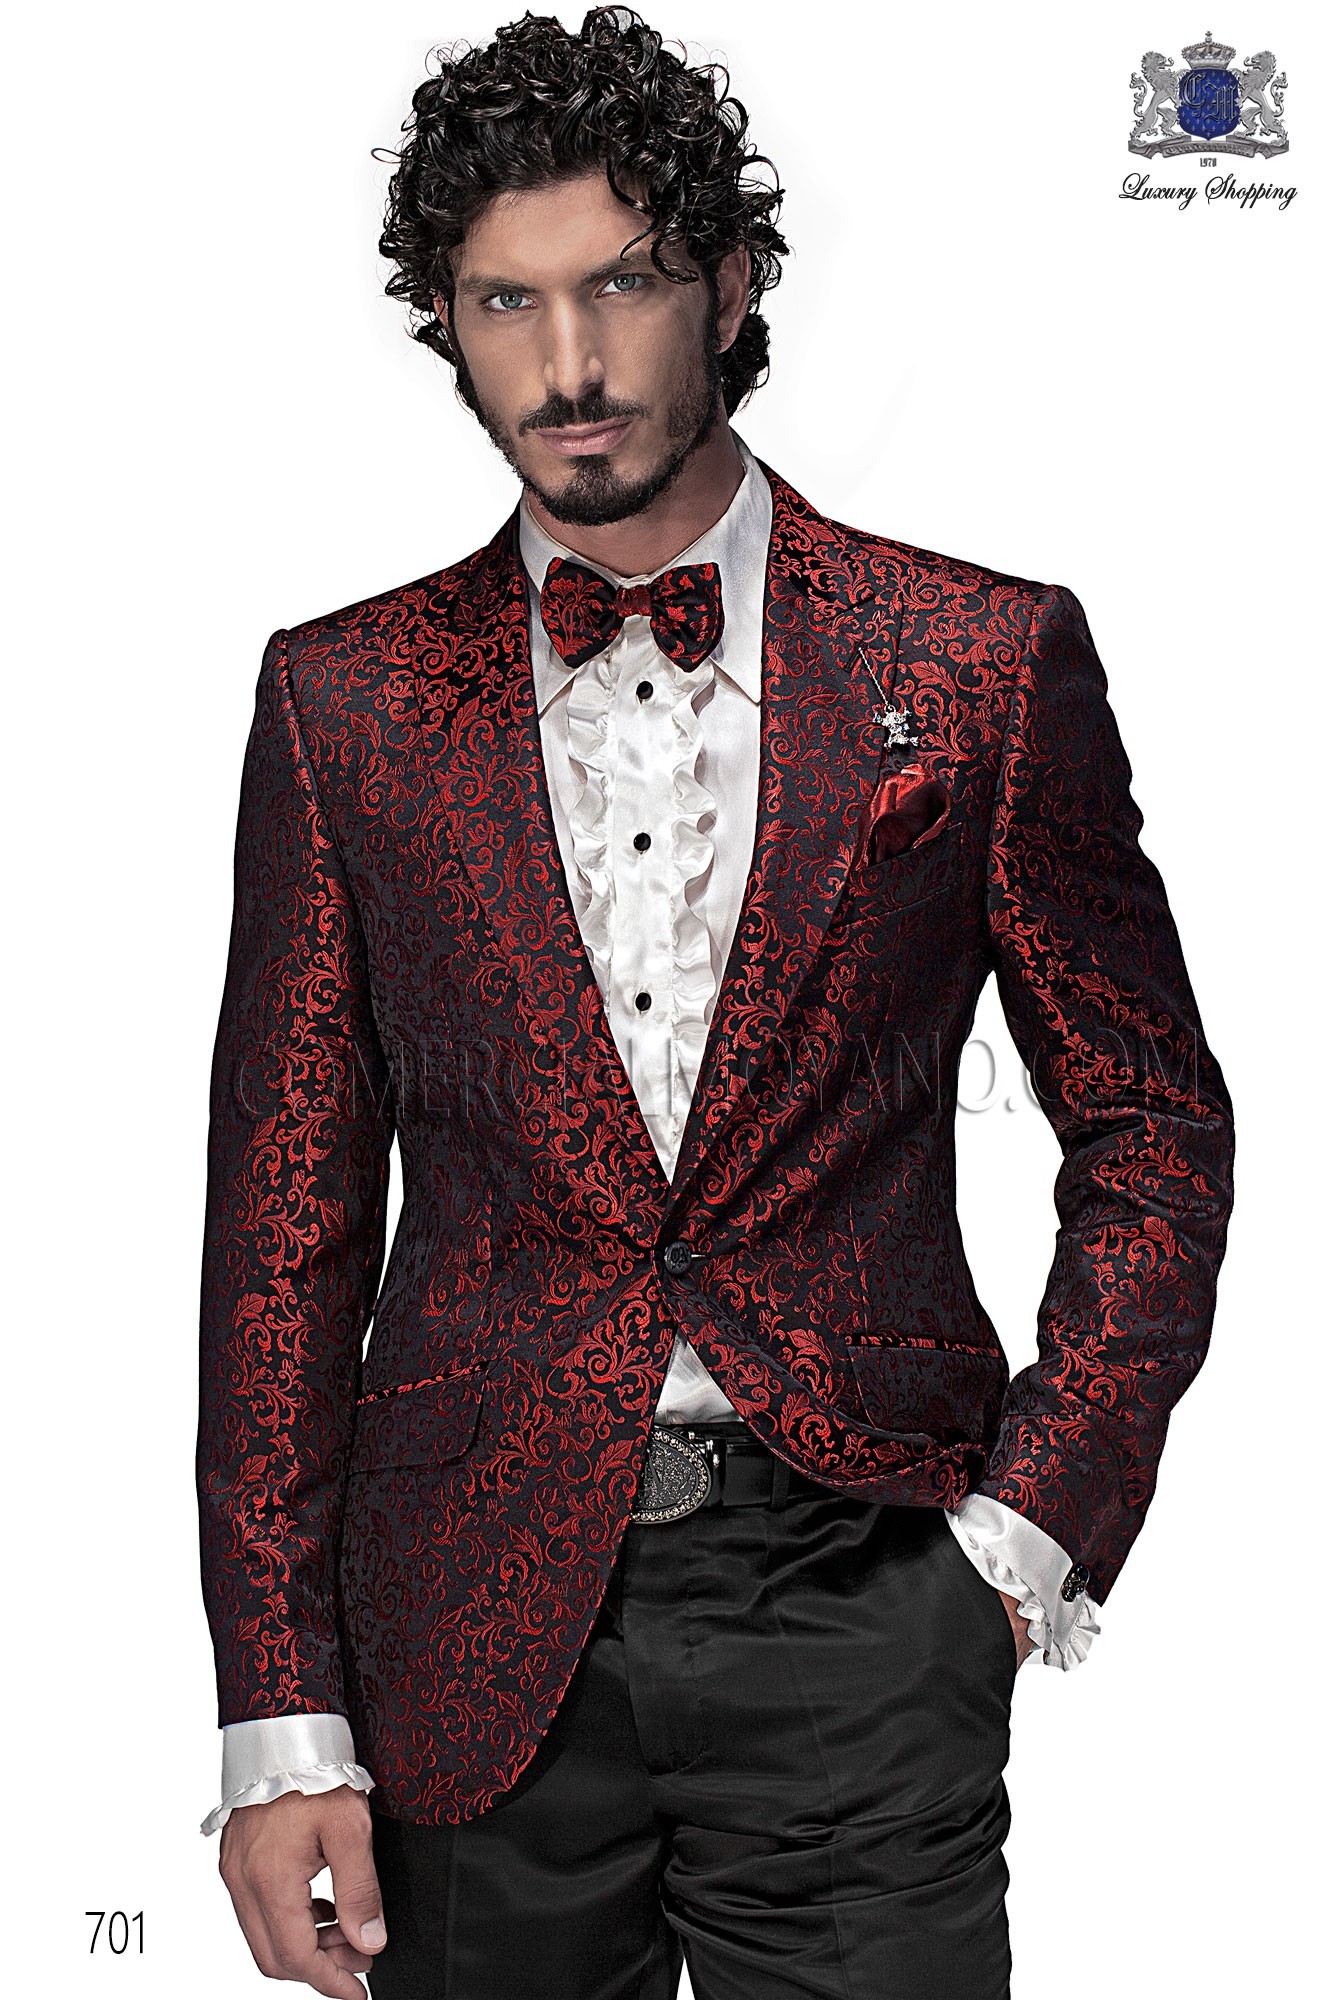 Traje de moda hombre negro/rojo modelo: 701 Mario Moyano colección Emotion